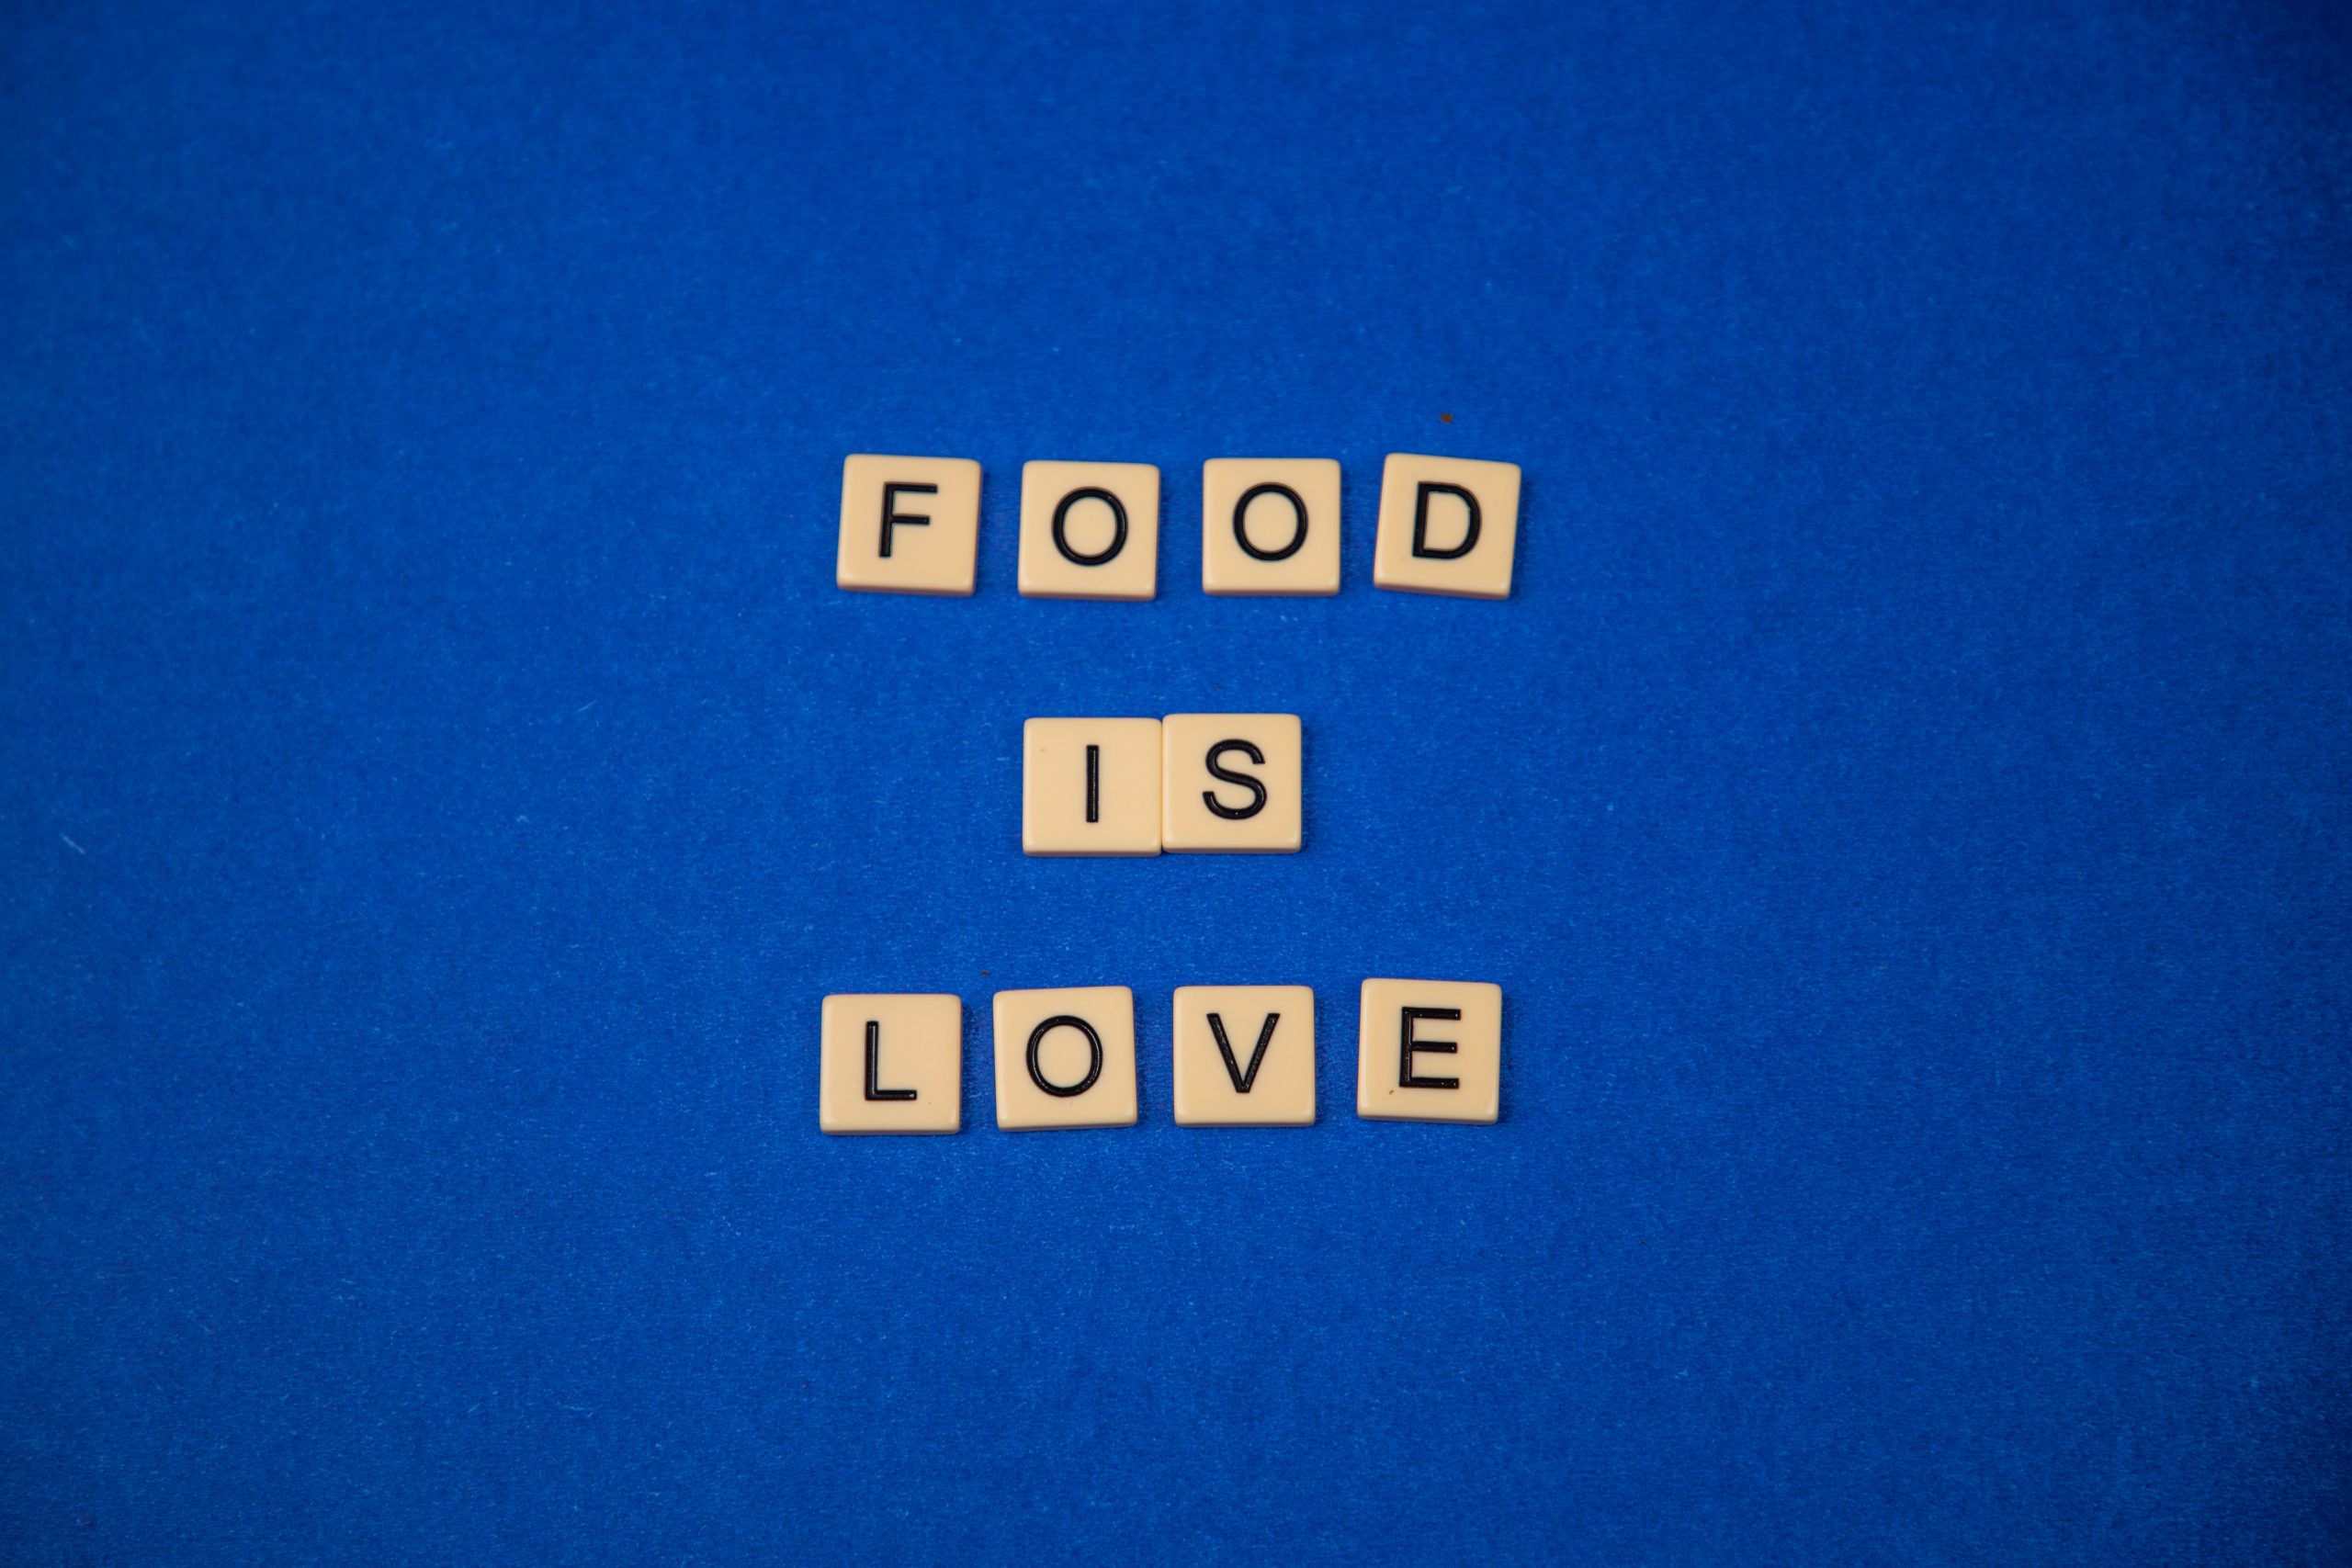 food is love